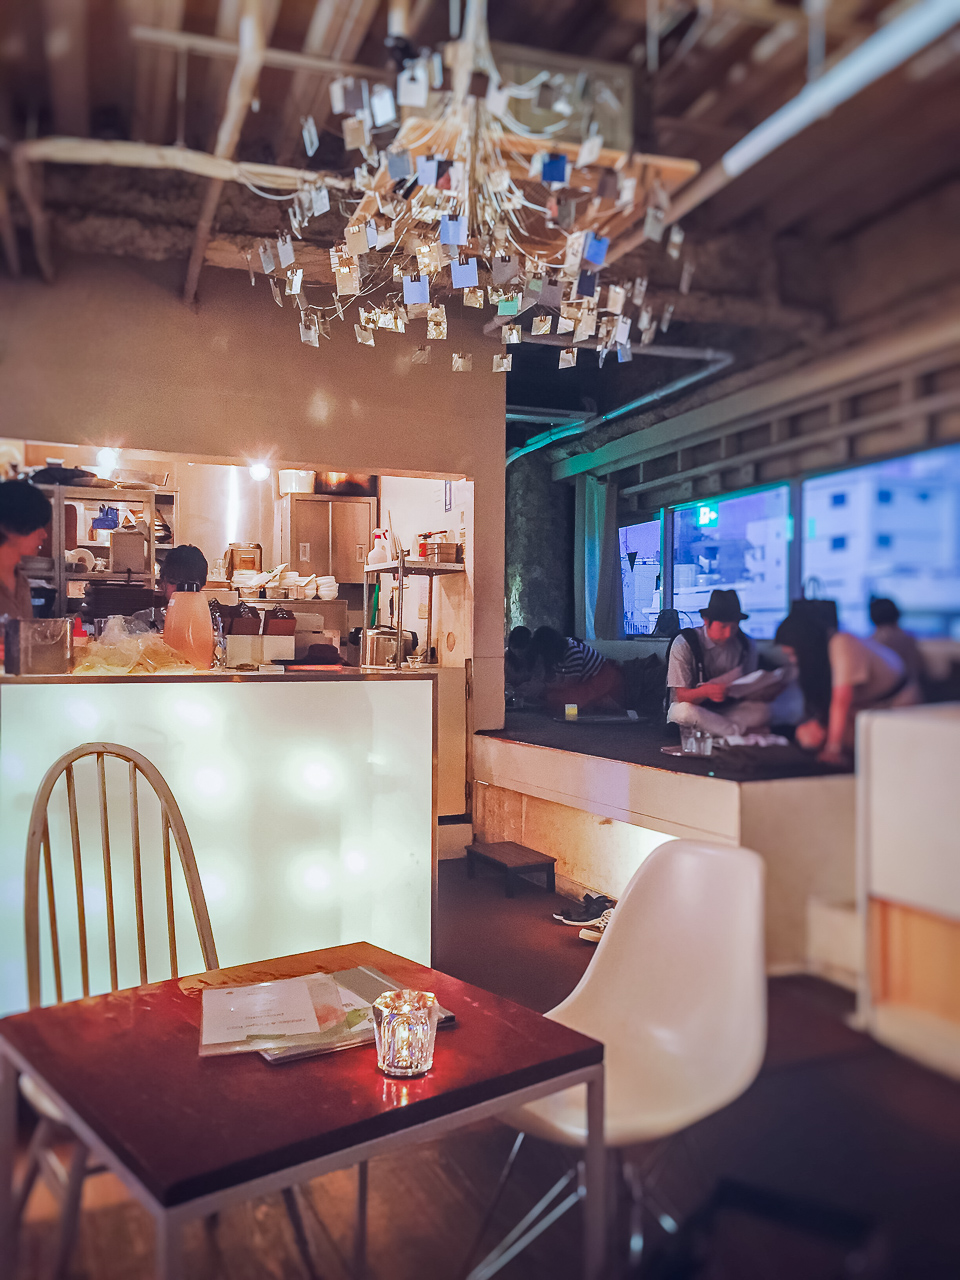 中目黒にあるお洒落なカフェ「チャノマ」の雰囲気